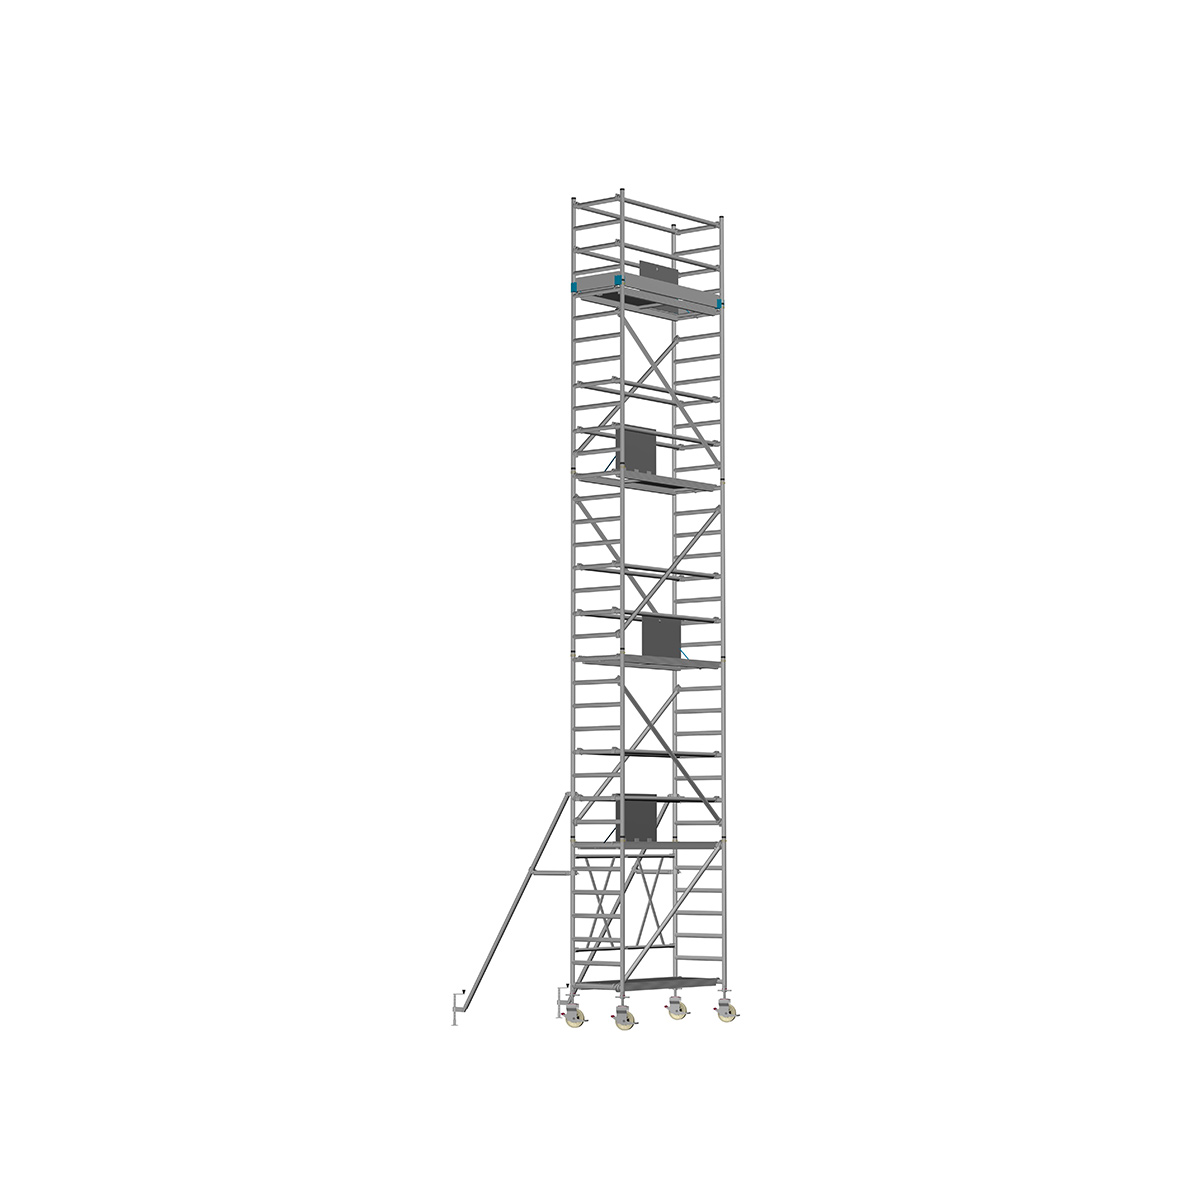 Chiemsee 2 PROFI- Länge: 2,54 m - Breite: 0,74 m, Standhöhe 1,00 m